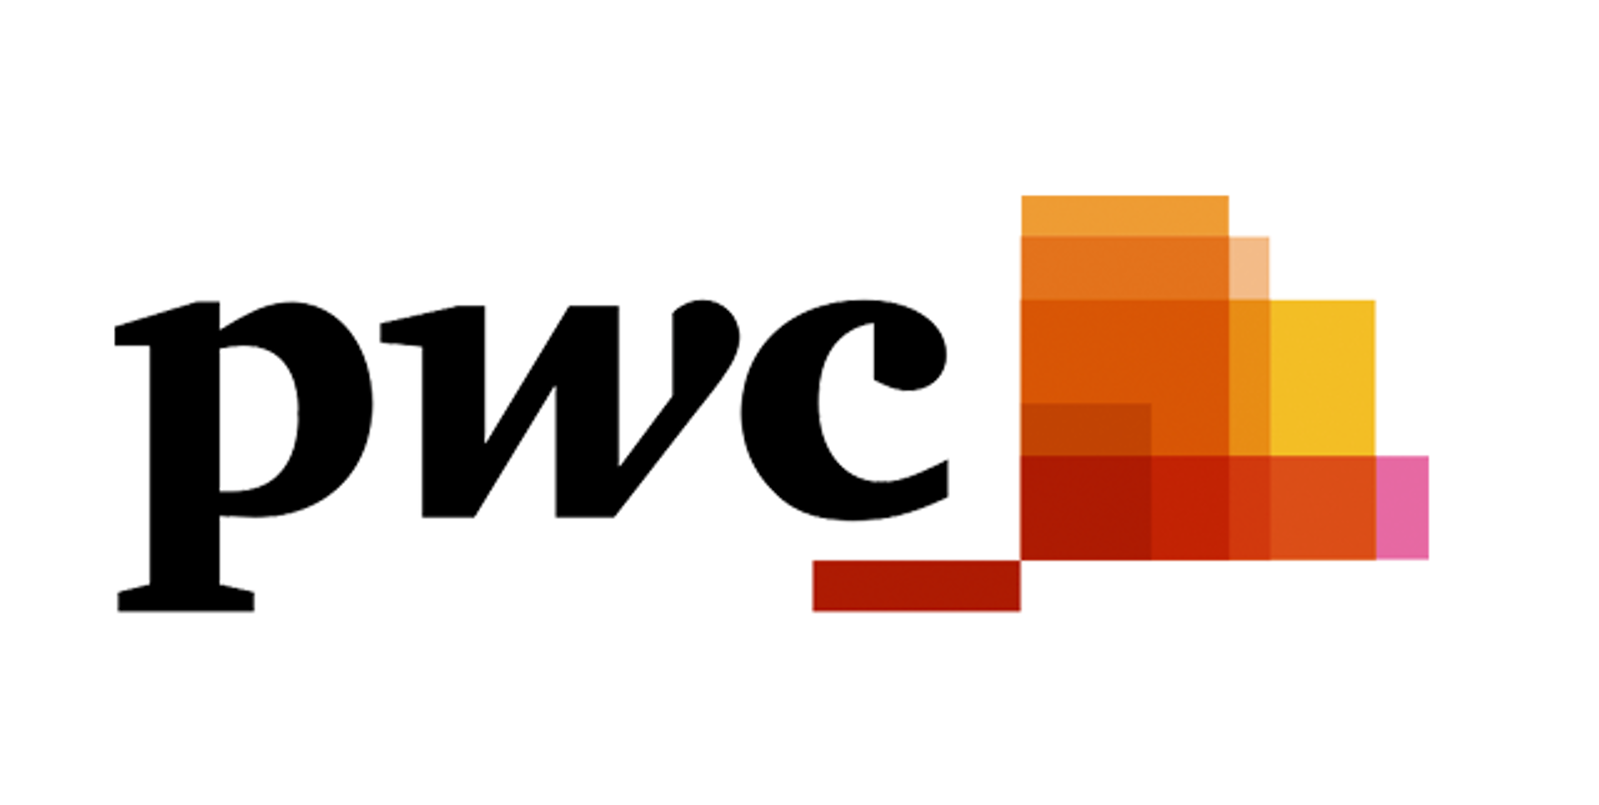 PWC logo.png